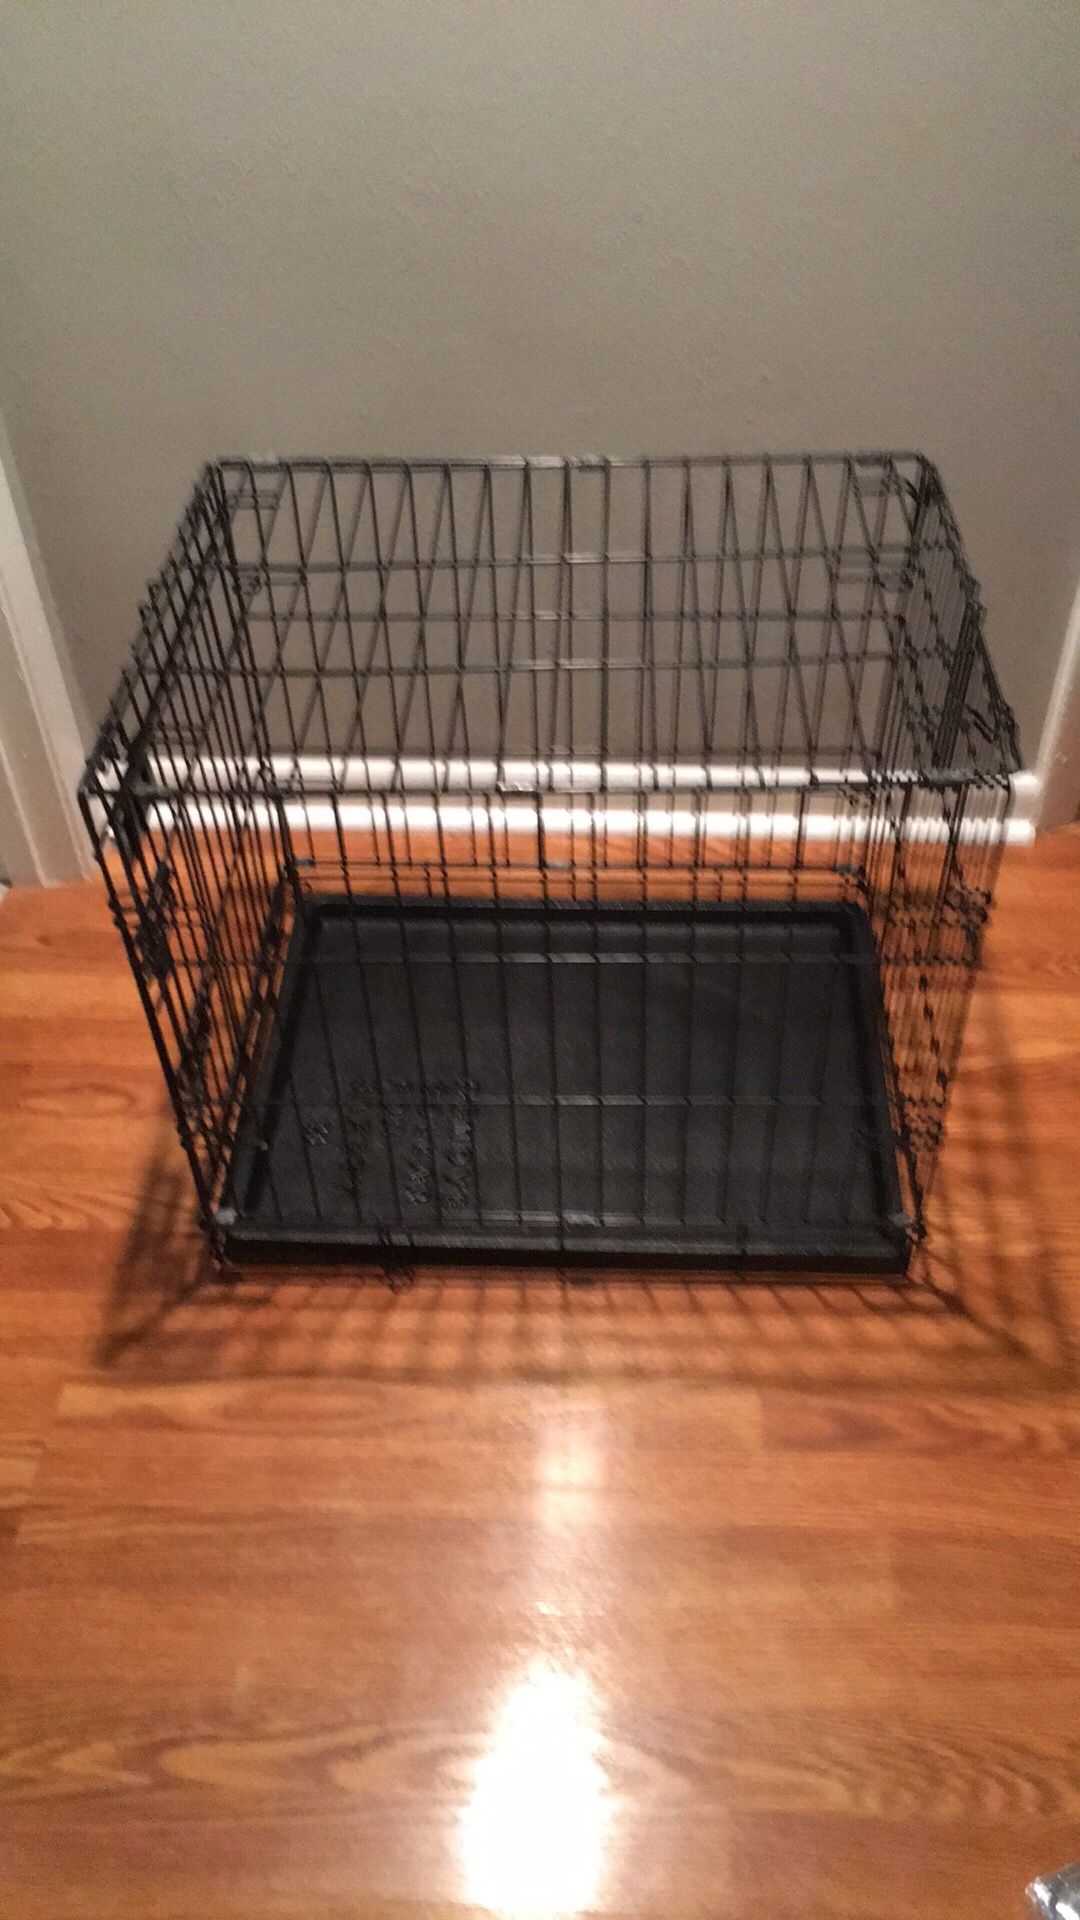 Medium dog cage (21x24x18)